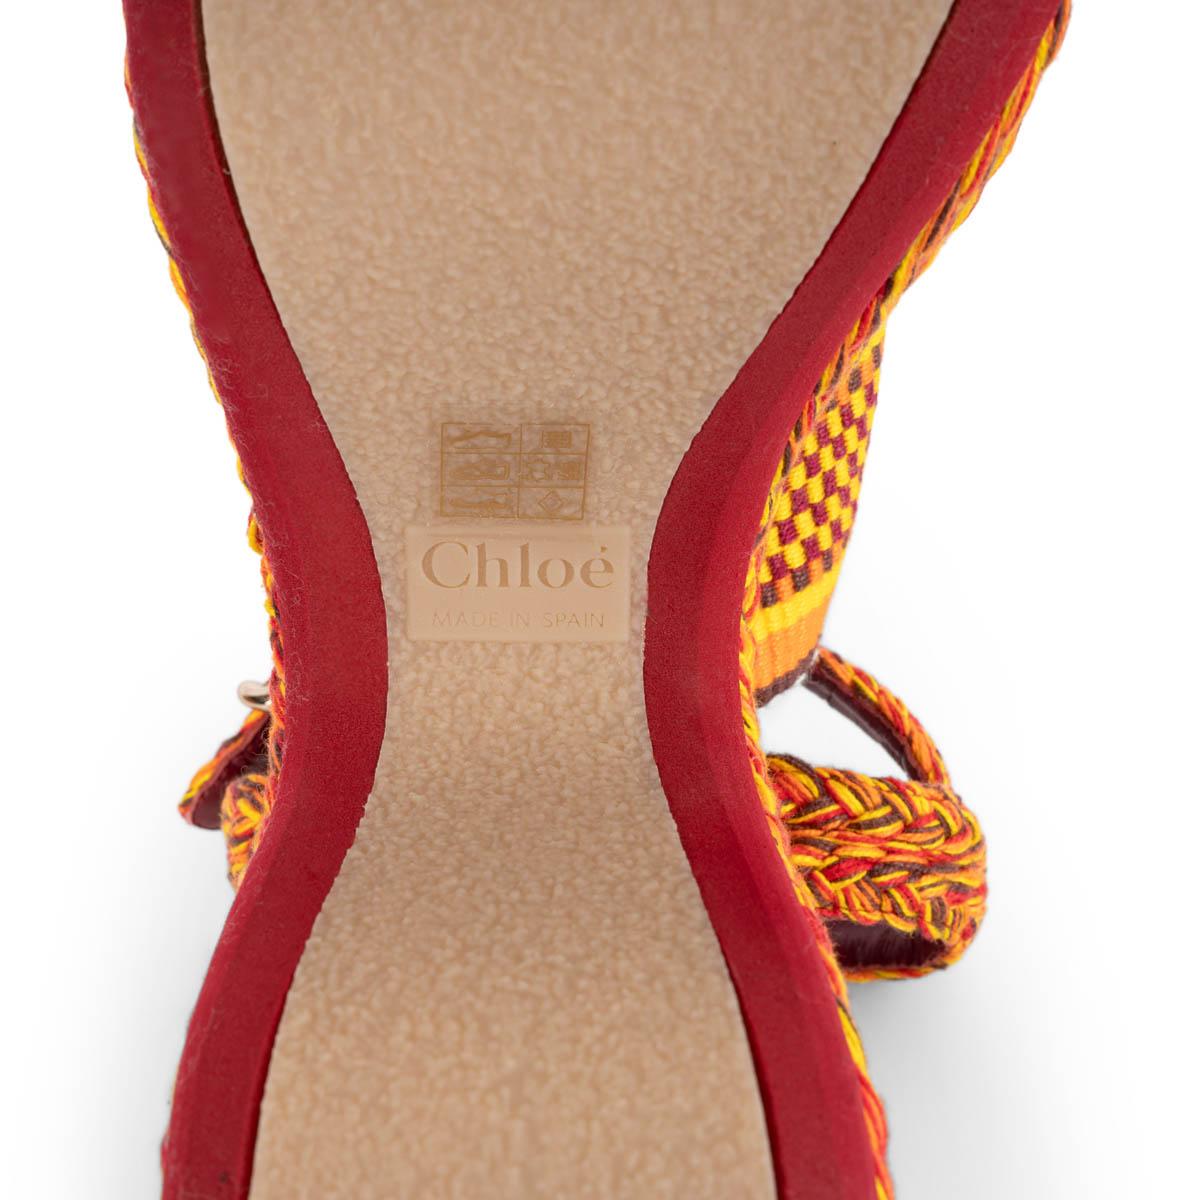 Chaussures compensées MERIL 110 CHLOE en coton jaune orange rouge, taille 37 en vente 4